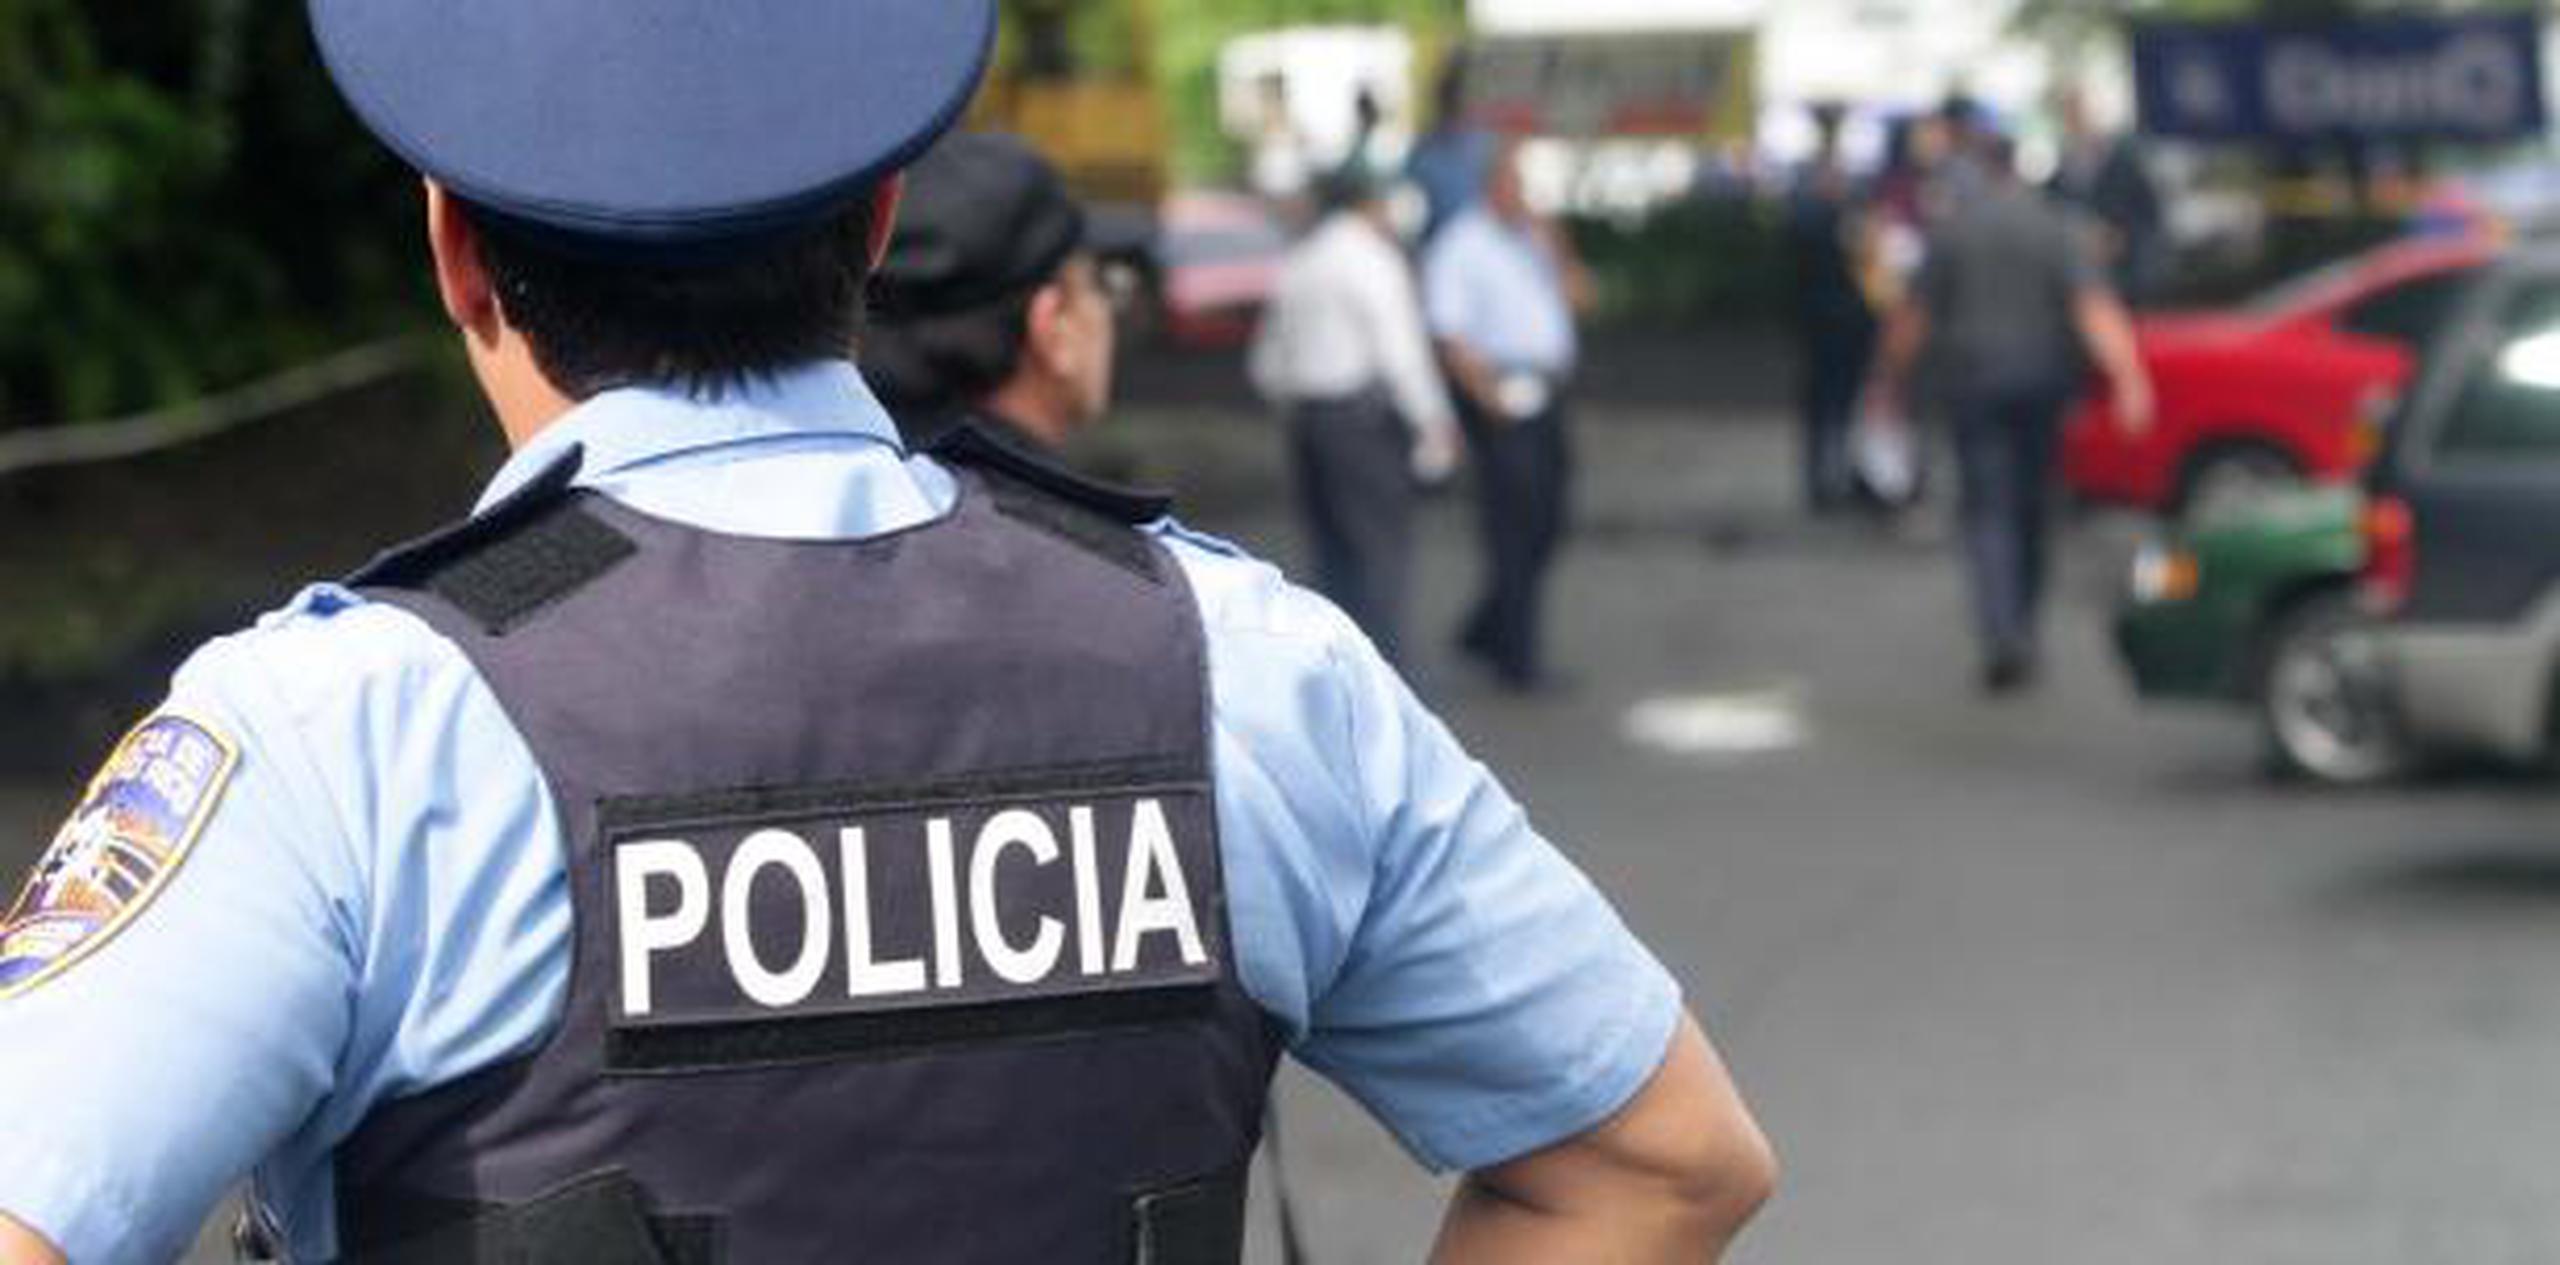 El crimen más reciente ocurrió a las 12: 56 p.m. en el sector Coroza del barrio Cerrillos en Ponce, donde un hombre fue ultimado a balazos por desconocidos.  (Archivo)